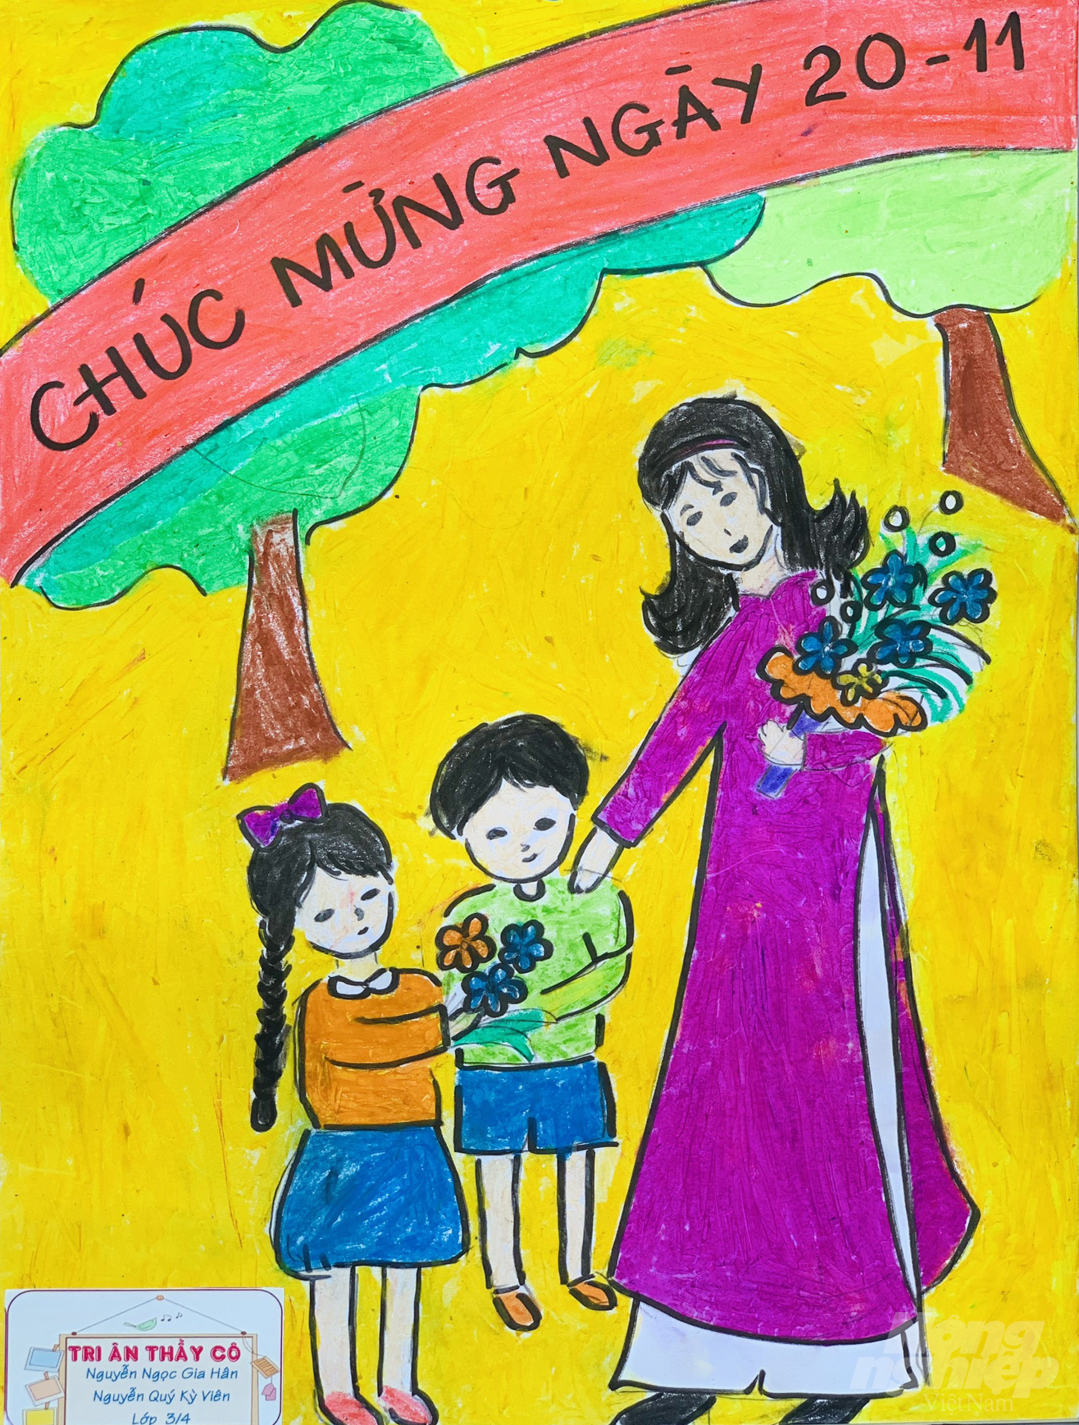 Vẽ tranh đề tài ngày nhà giáo Việt Nam 2011 đơn giản  Cách vẽ tranh ngày  nhà giáo việt nam 2011  YouTube